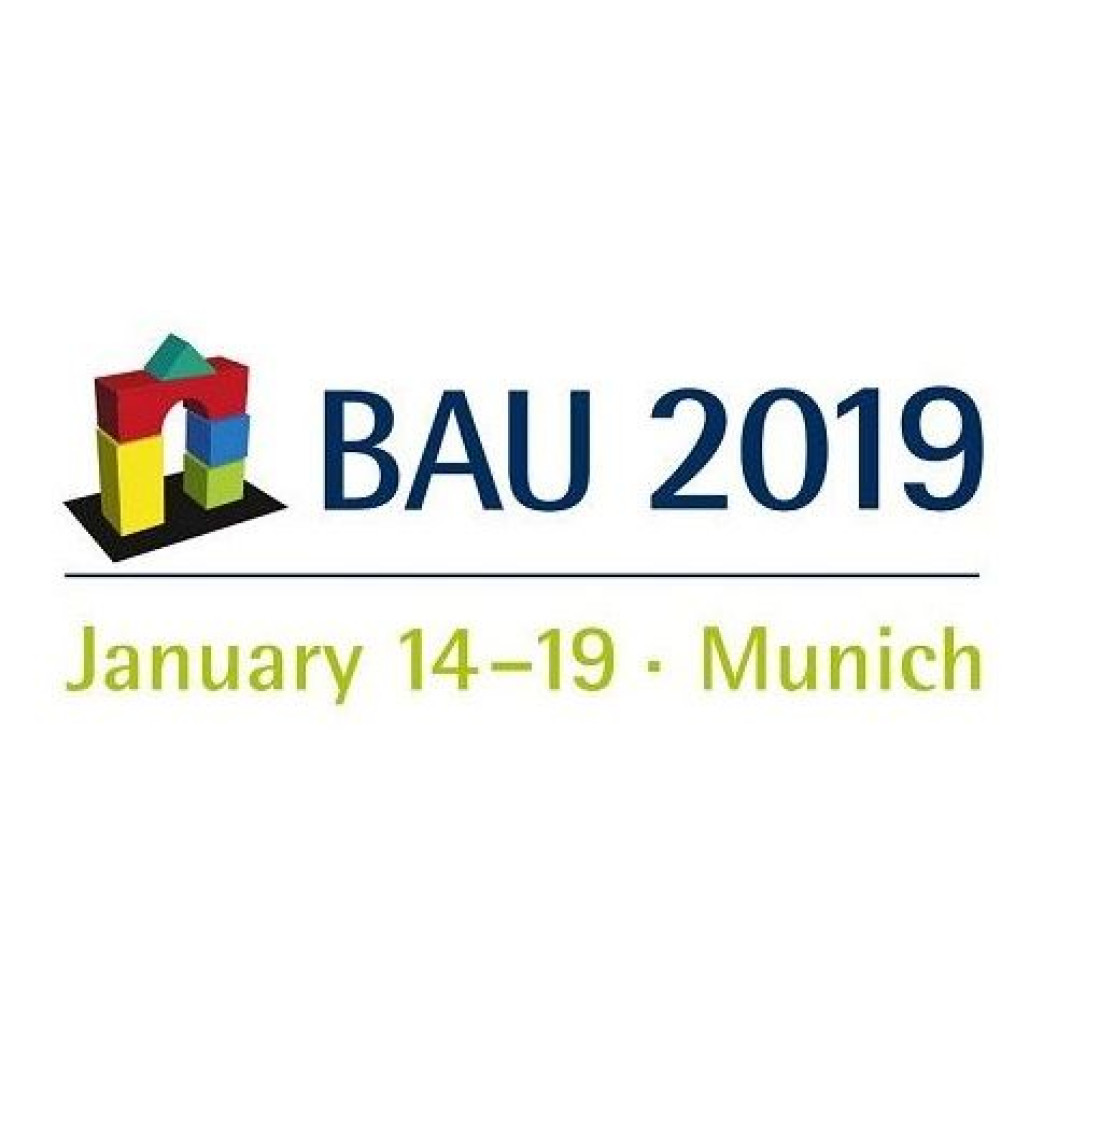 BAU 2019: Pfleiderer prezentuje po raz pierwszy materiały elewacyjne i pozszerza ofertę dekorów